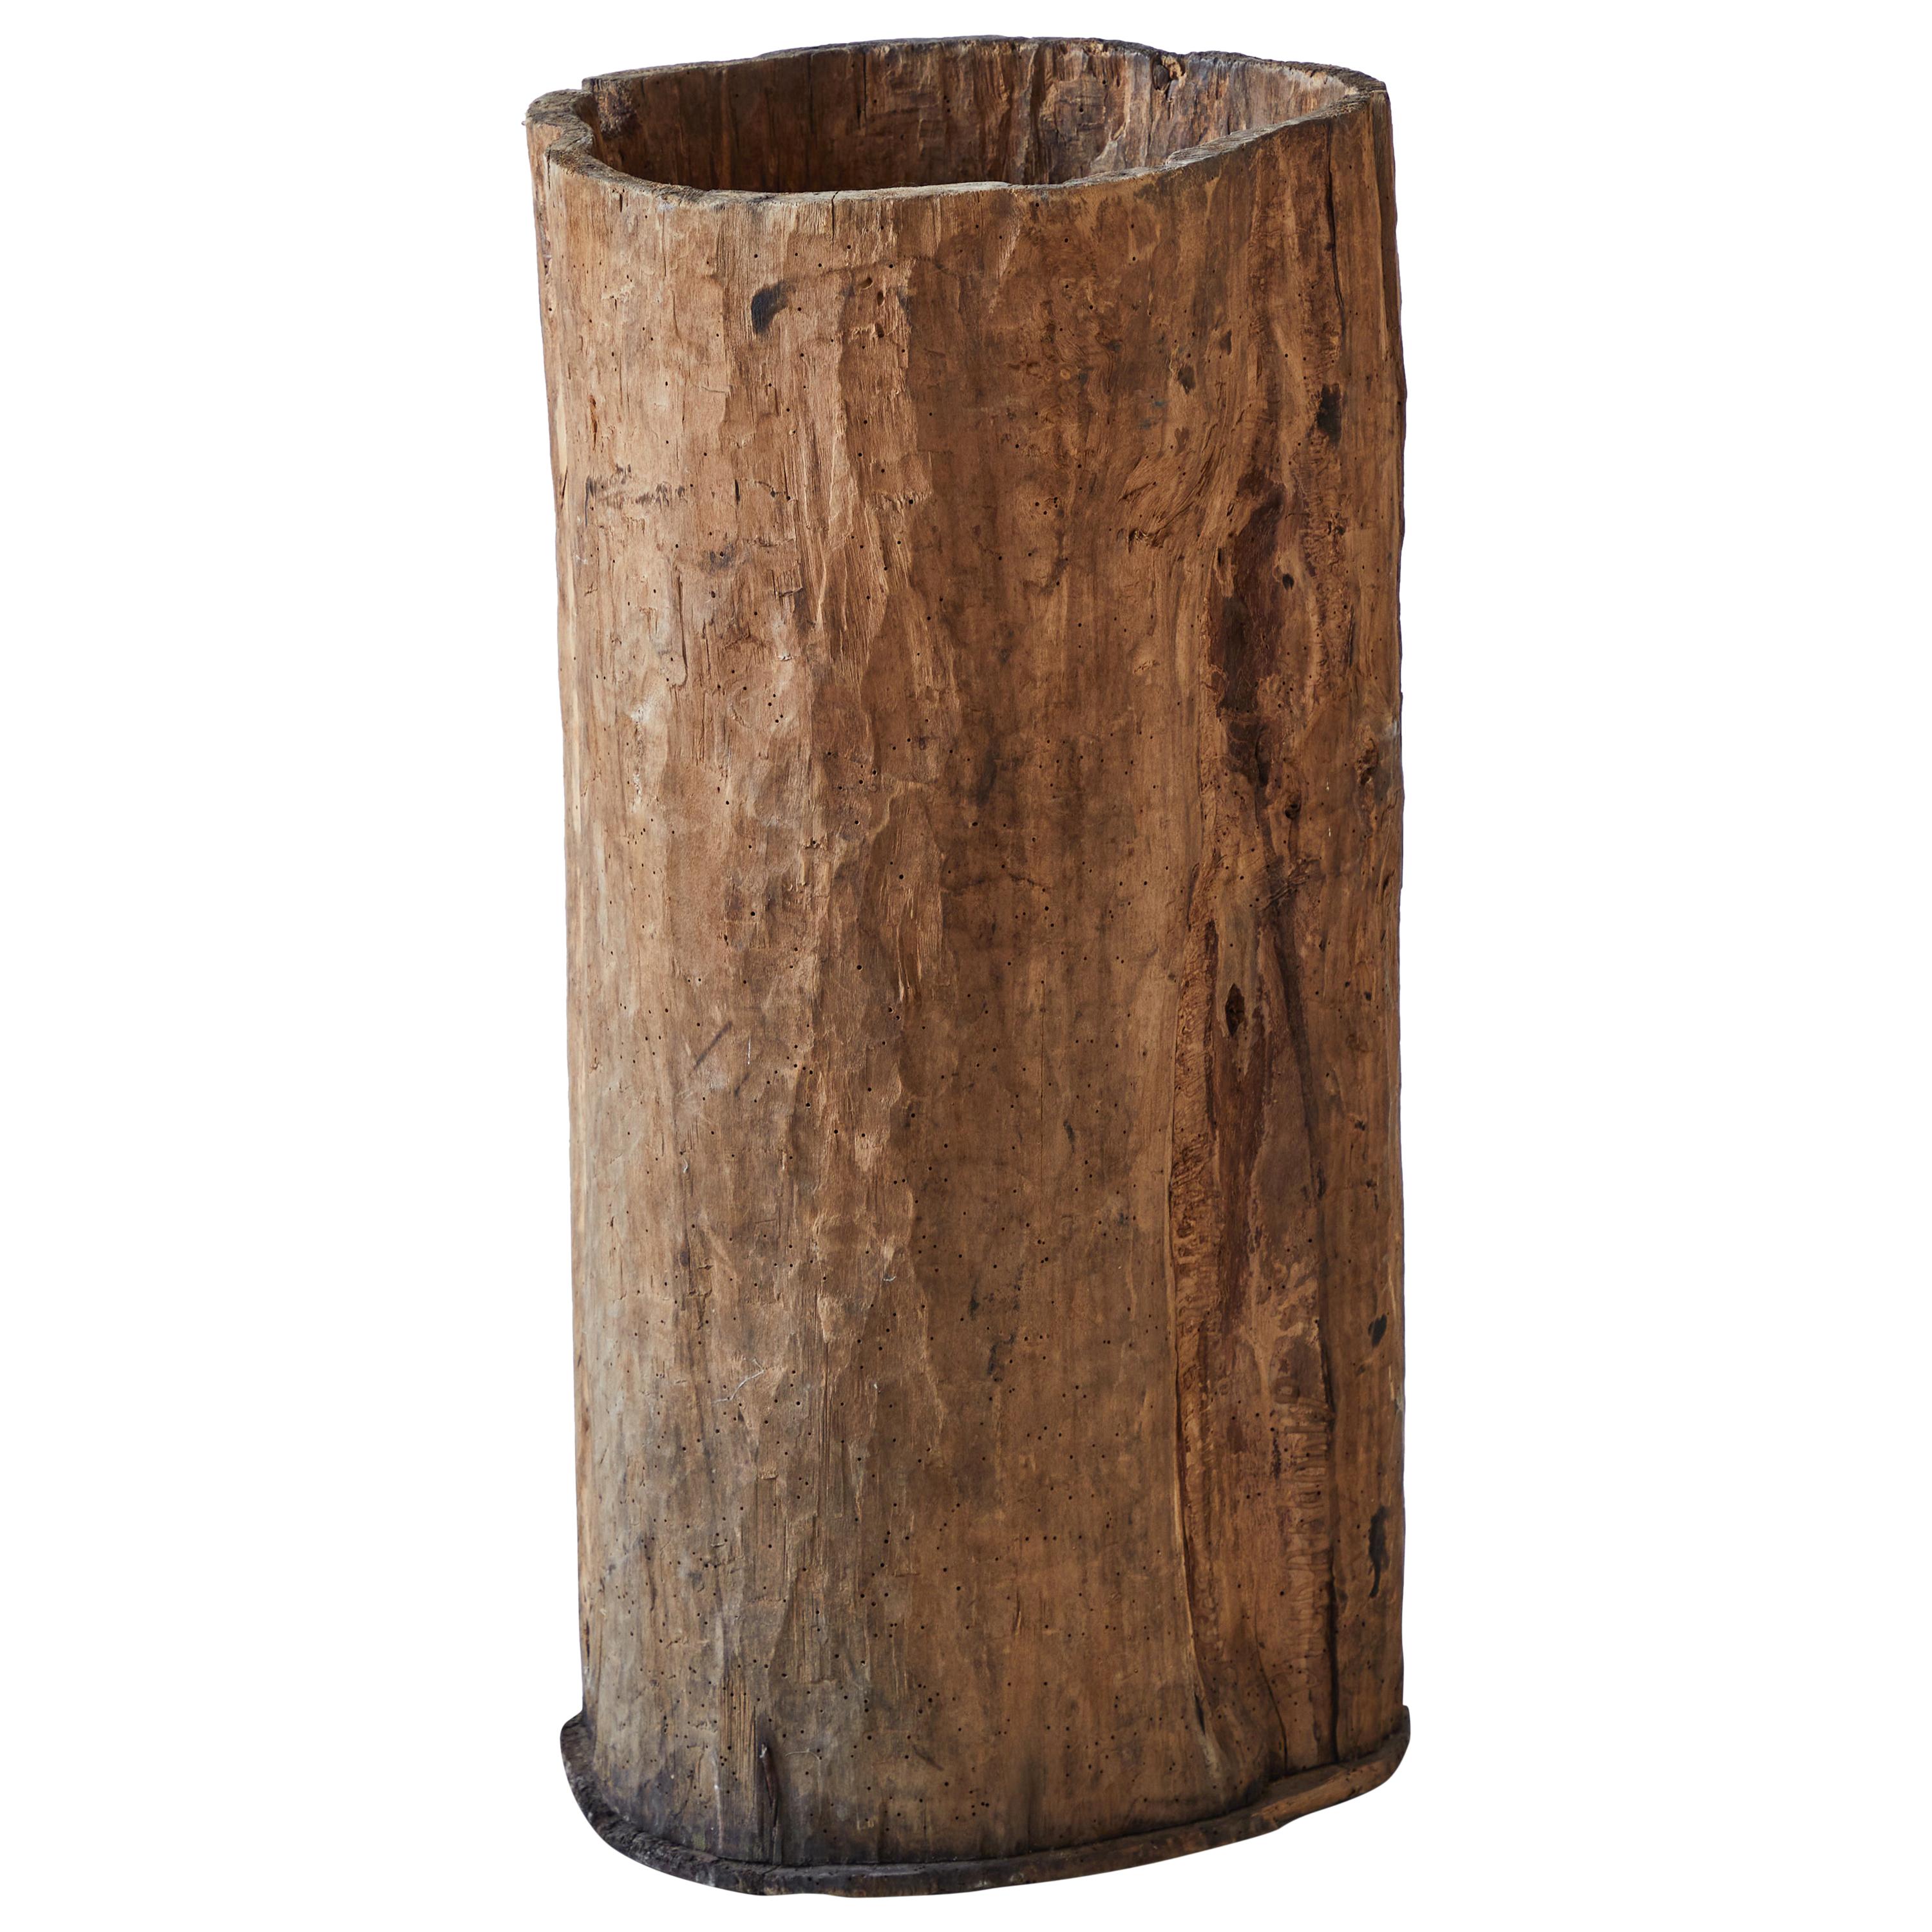 Rustic Tree Trunk Barrel